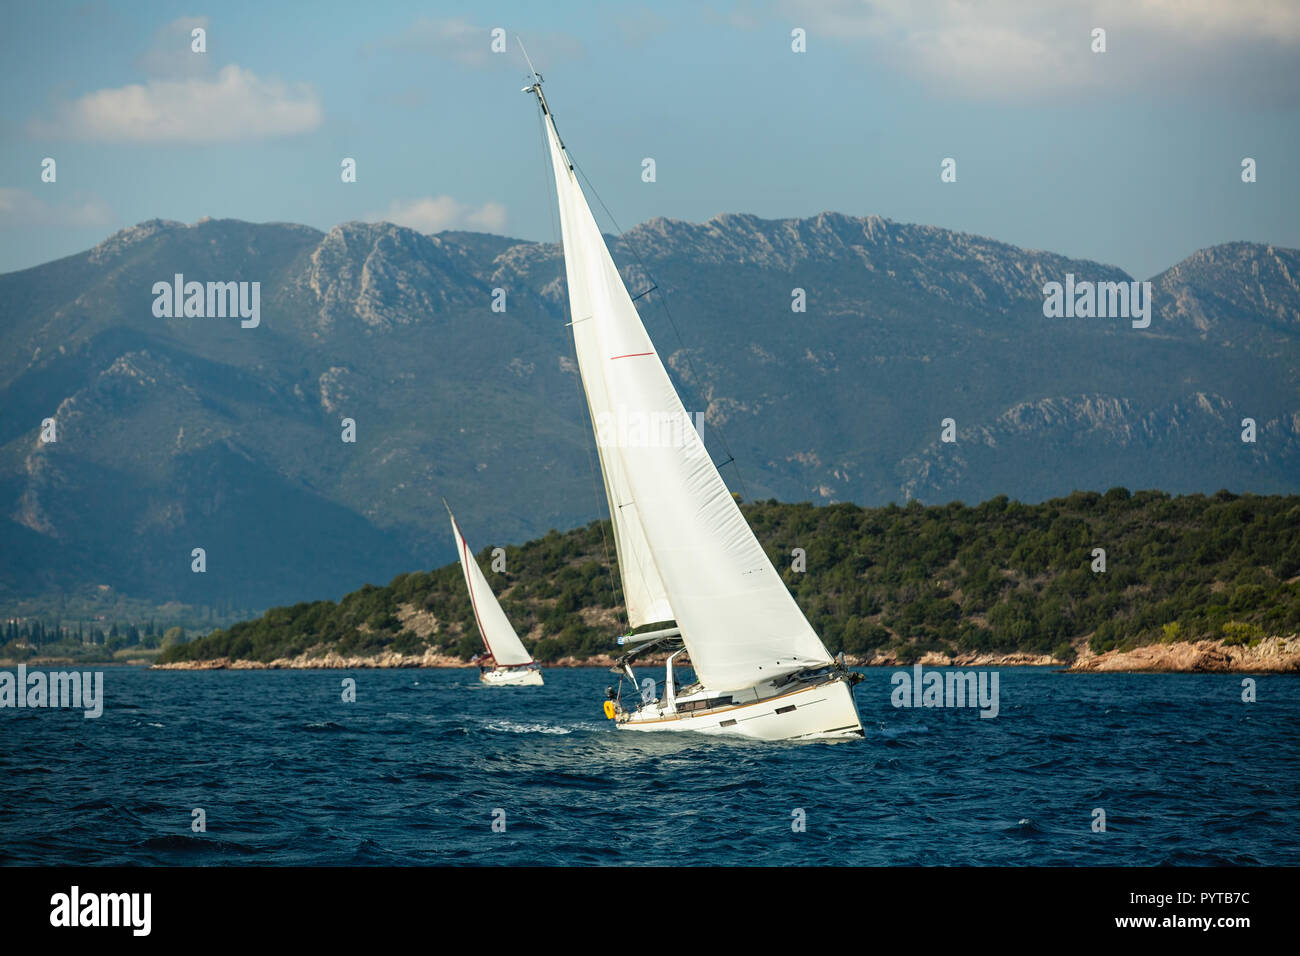 Noleggio barche con vele bianche in prossimità delle rocce nel mare Egeo. Regata a vela. Foto Stock